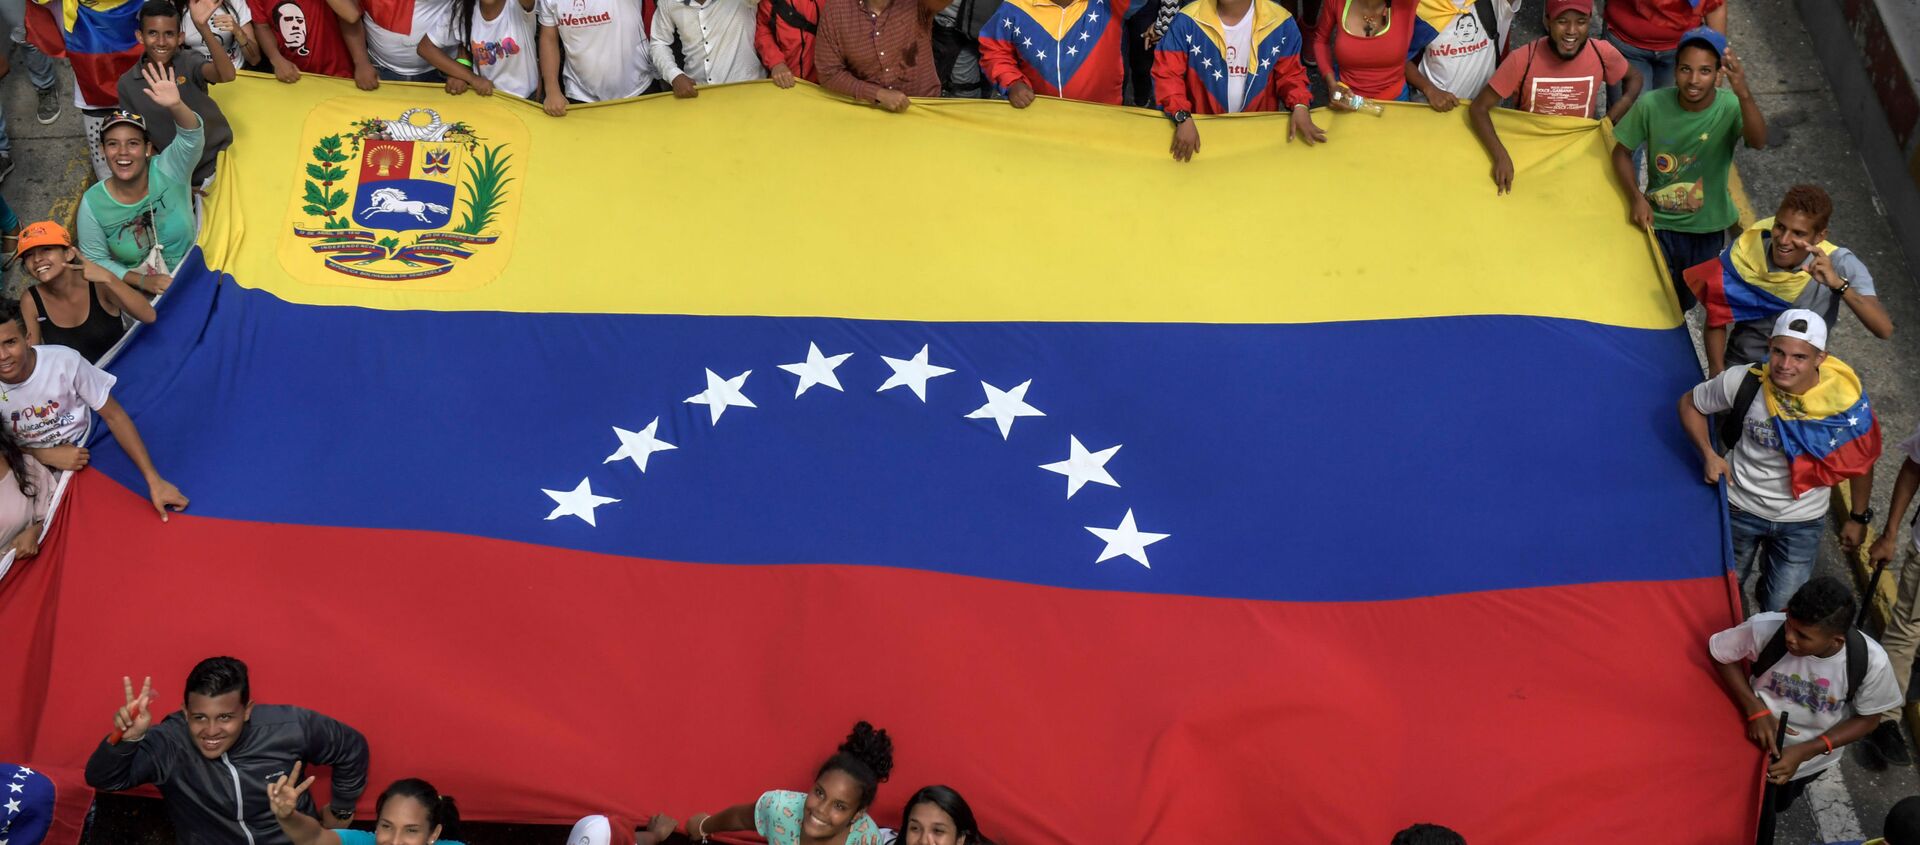 Partidarios del presidente venezolano, Nicolás Maduro con la bandera nacional - Sputnik Mundo, 1920, 05.12.2019